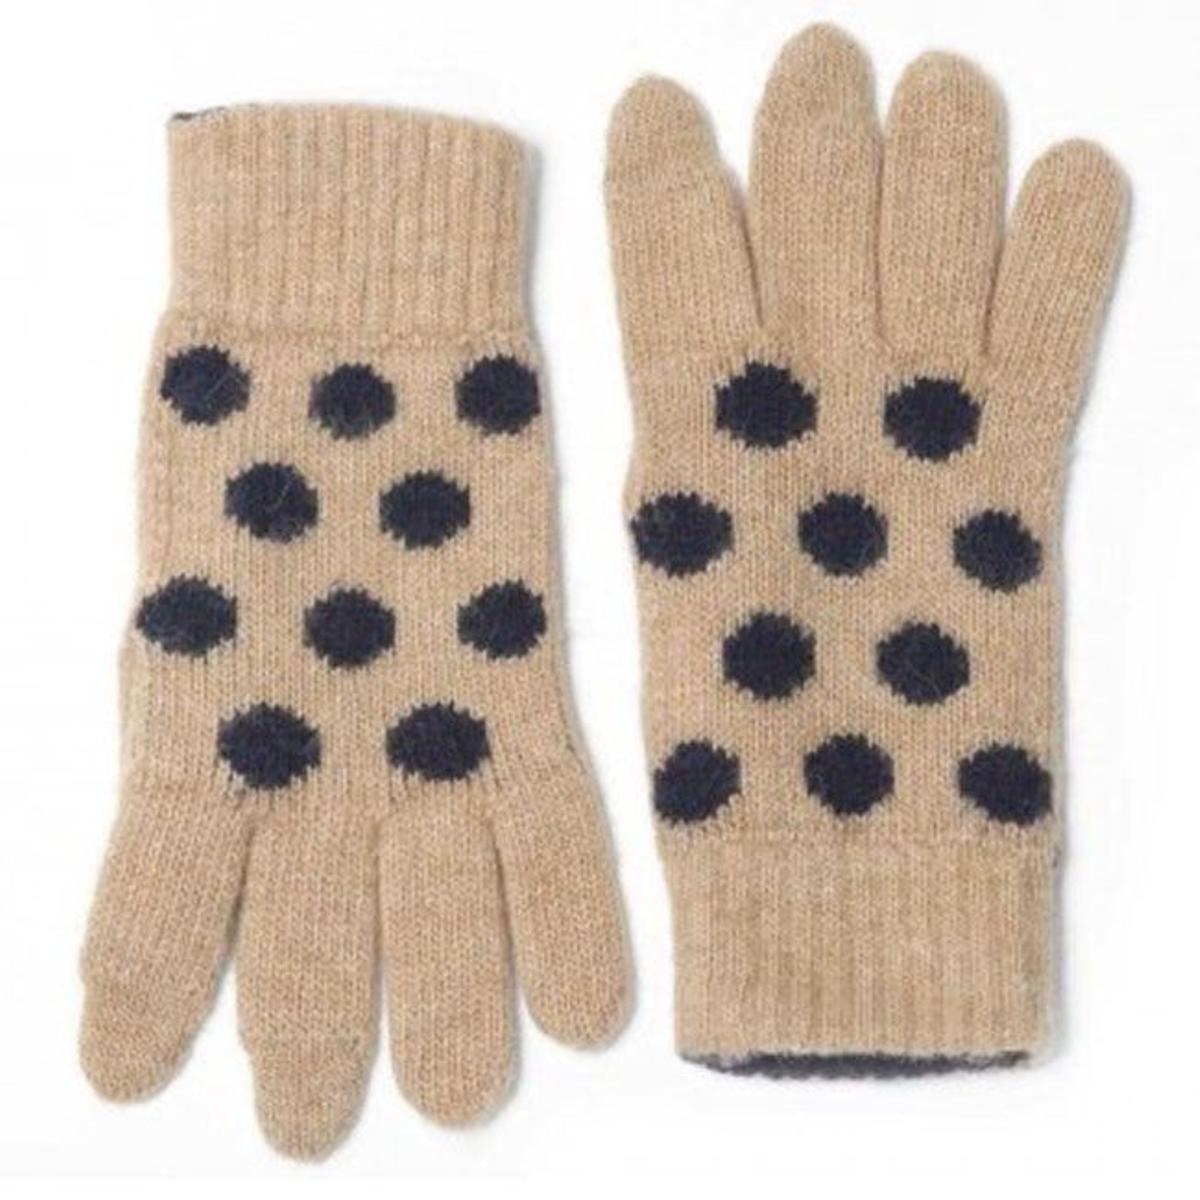 Regalos por menos de 50 euros: guantes de lana compatibles con pantalla táctil